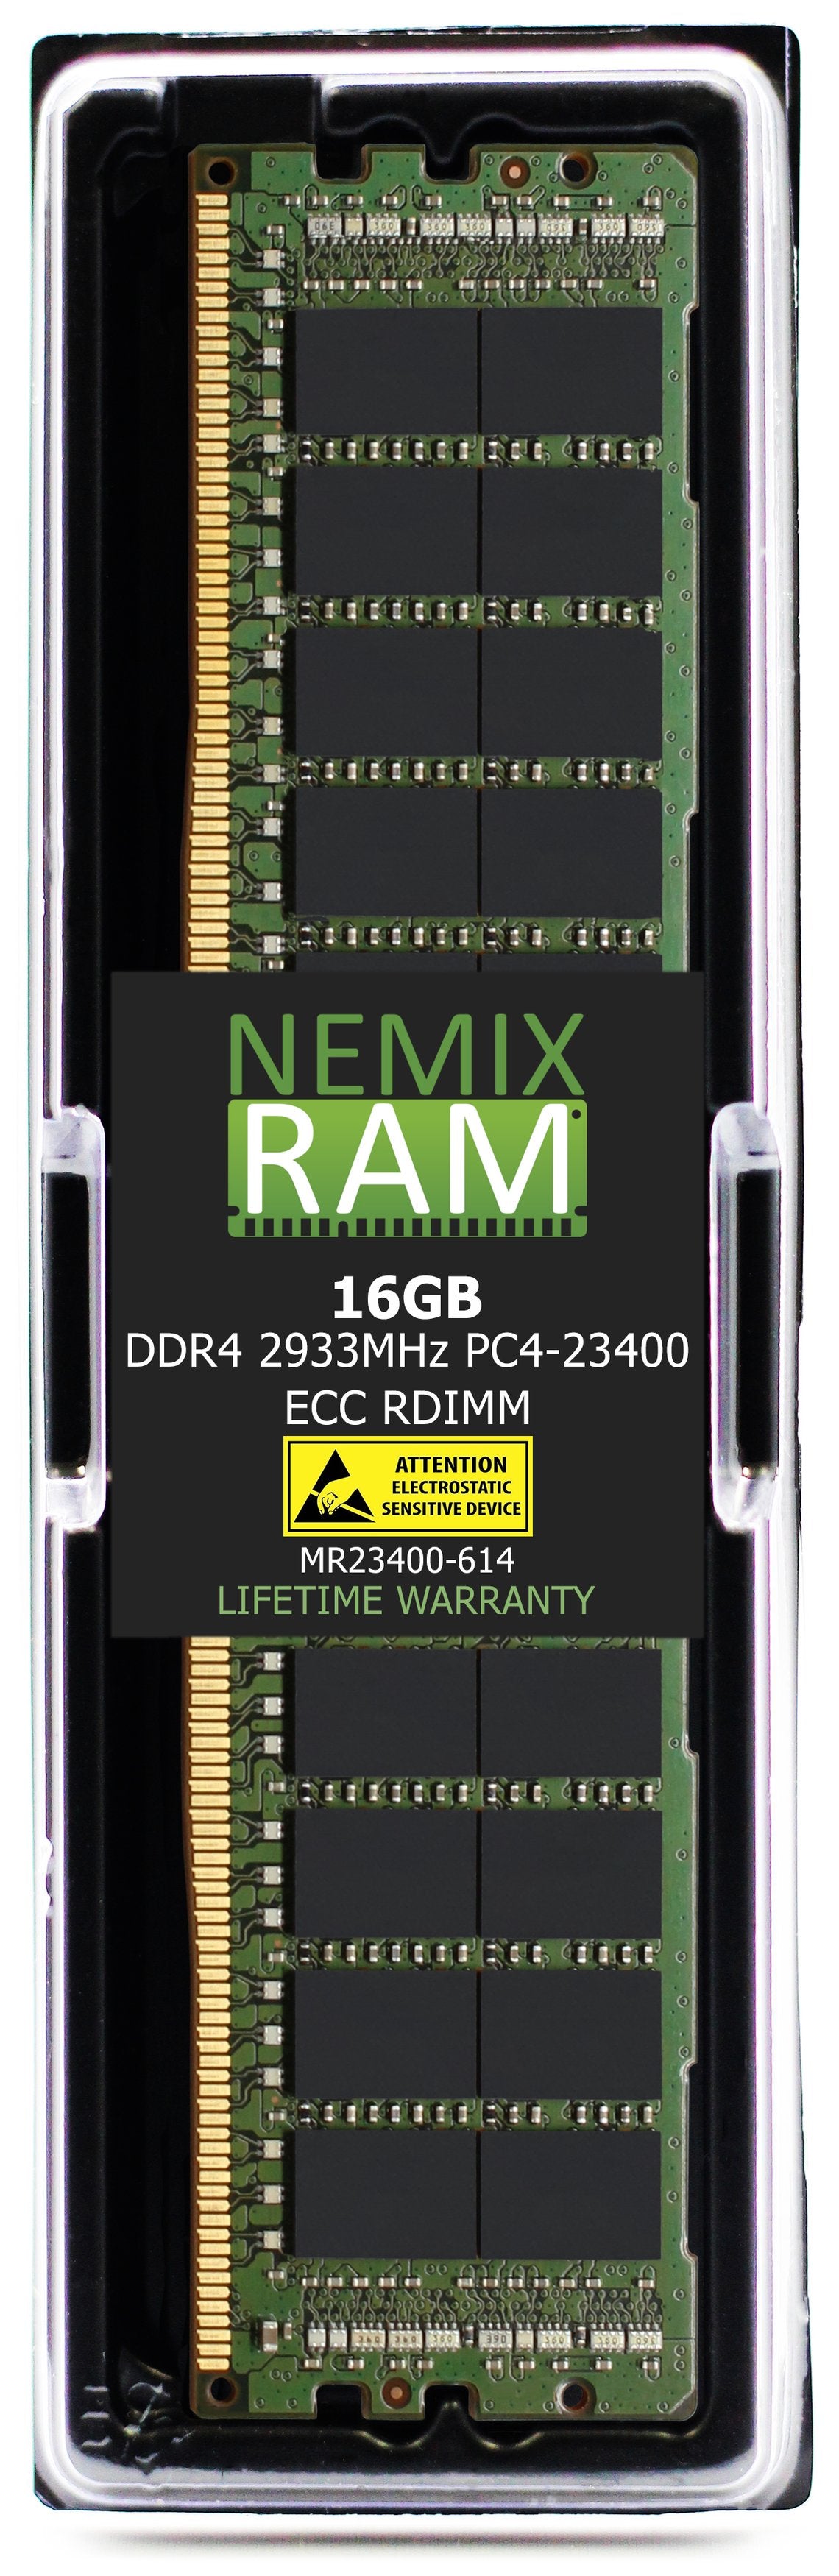 16GB DDR4 2933MHZ PC4-23400 RDIMM Compatible with Supermicro MEM-DR416L-CL02-ER29